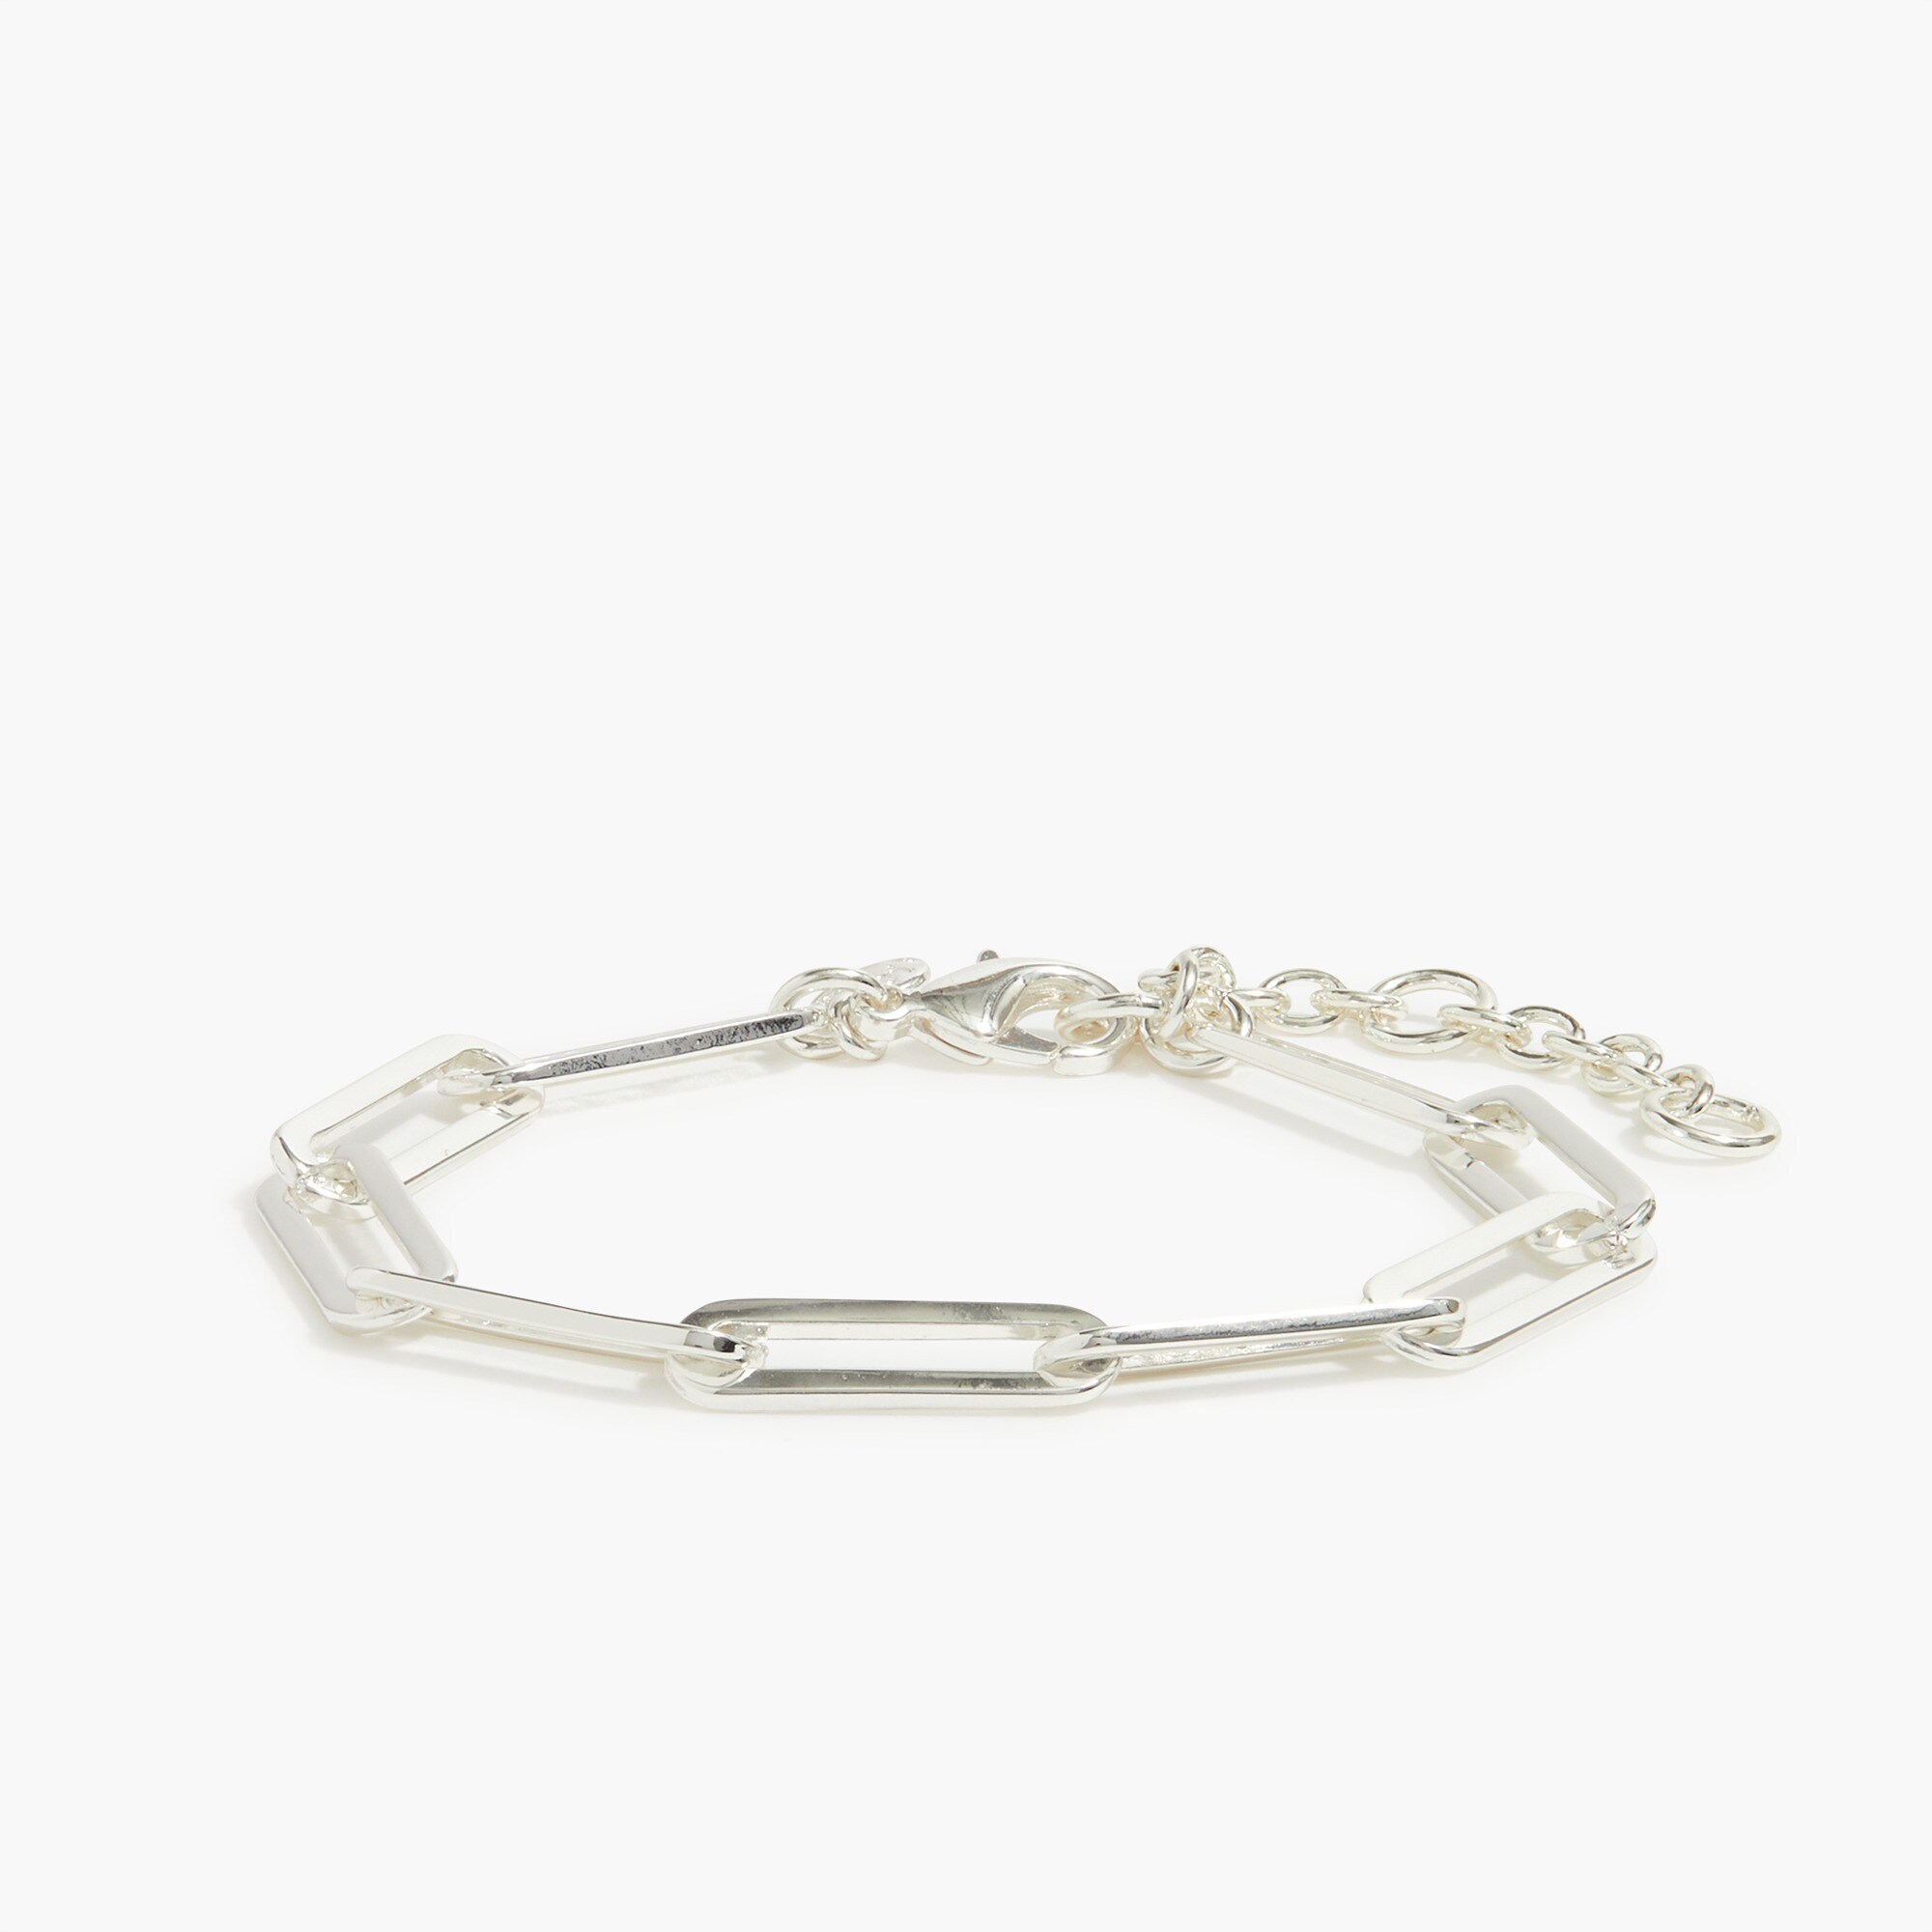  Paper-clip link bracelet